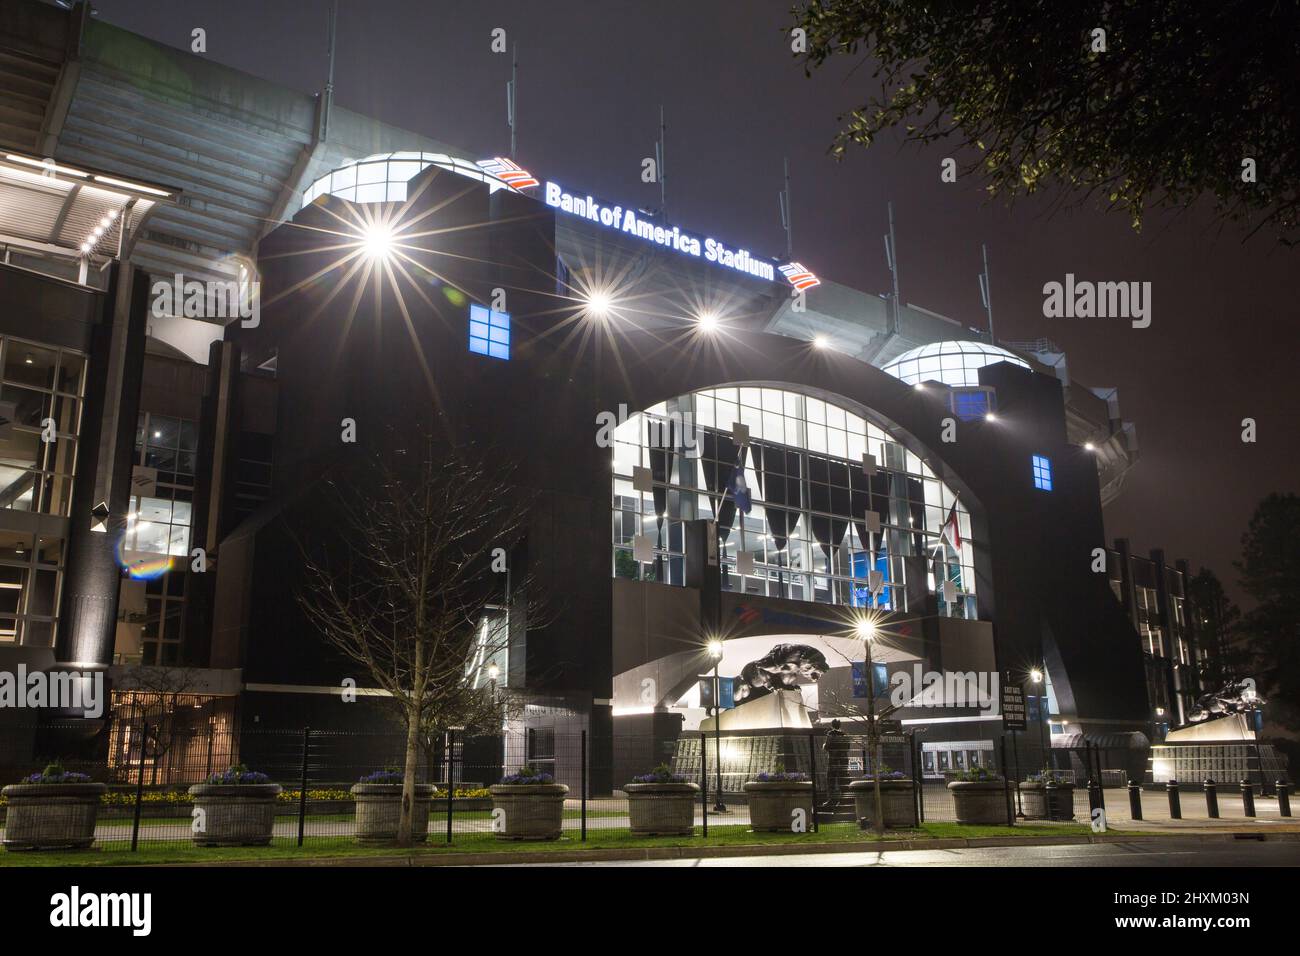 Vue de nuit du stade Bank of America à Charlotte, en Caroline du Nord, stade des Carolina Panthers de la National football League et des Major League Soccer Banque D'Images